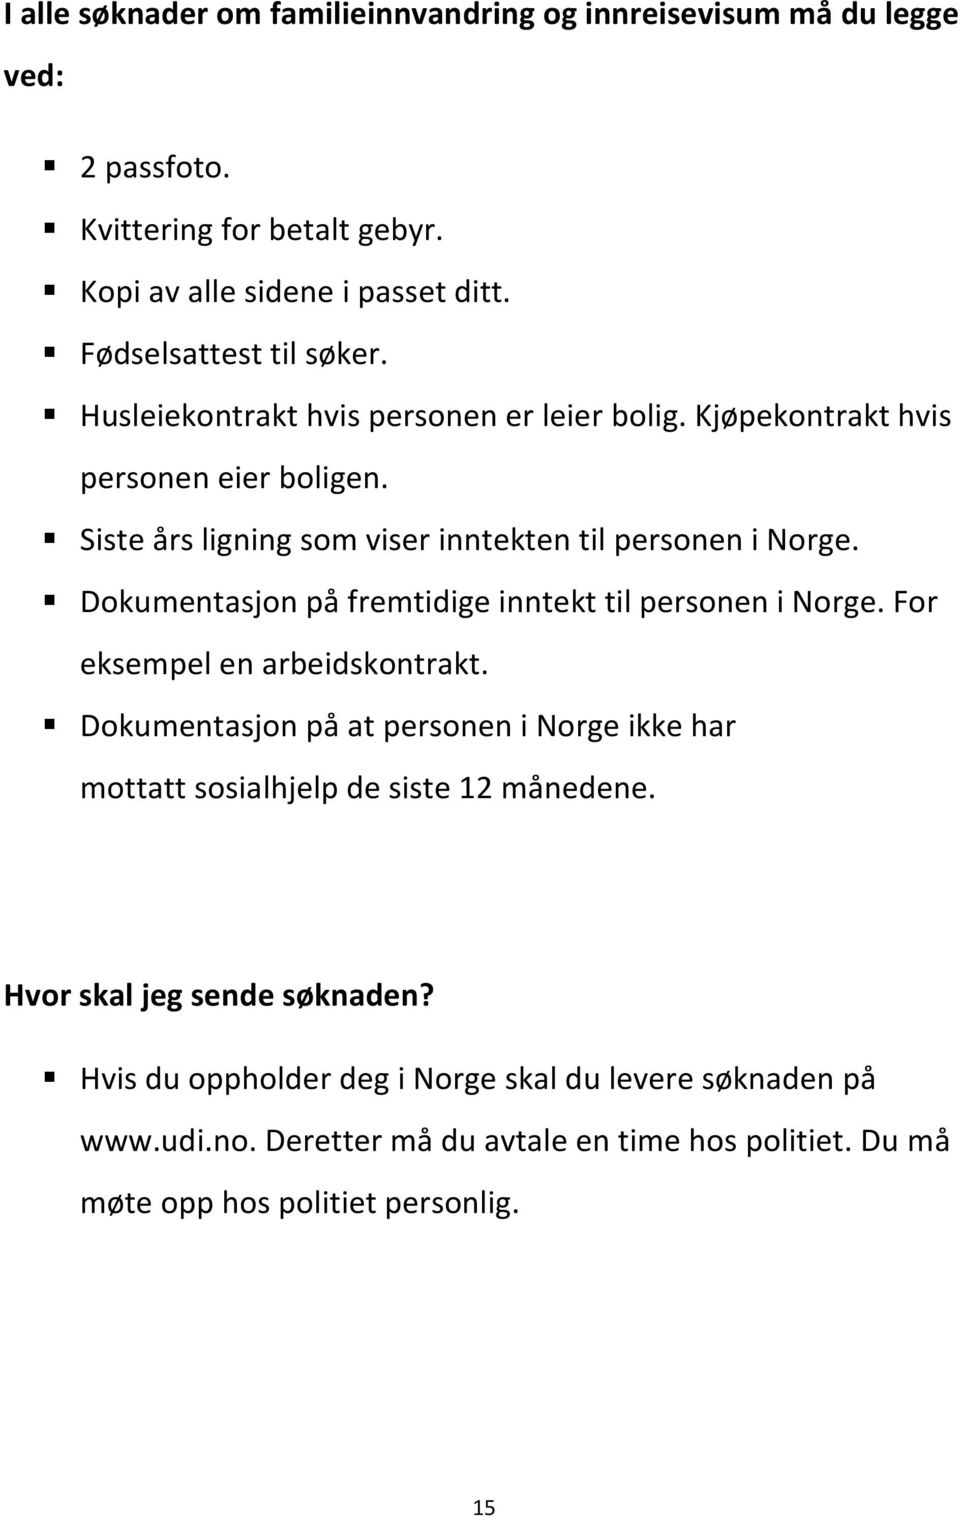 Siste års ligning som viser inntekten til personen i Norge. Dokumentasjon på fremtidige inntekt til personen i Norge. For eksempel en arbeidskontrakt.